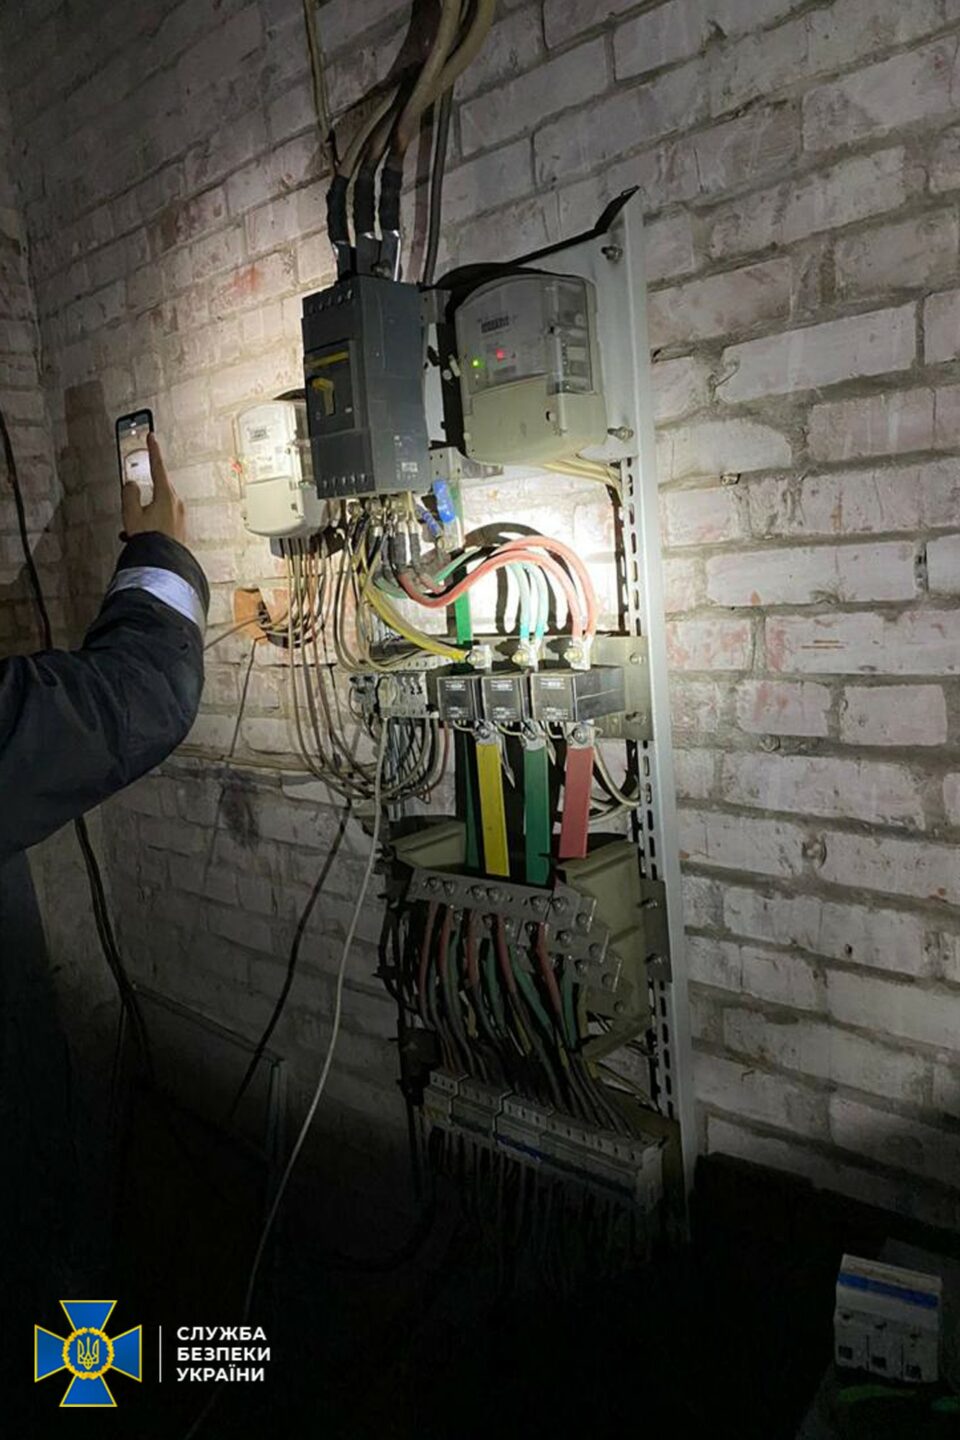 СБУ: підпільна криптоферма на Київщині вкрала електроенергії на 3,5 млн грн